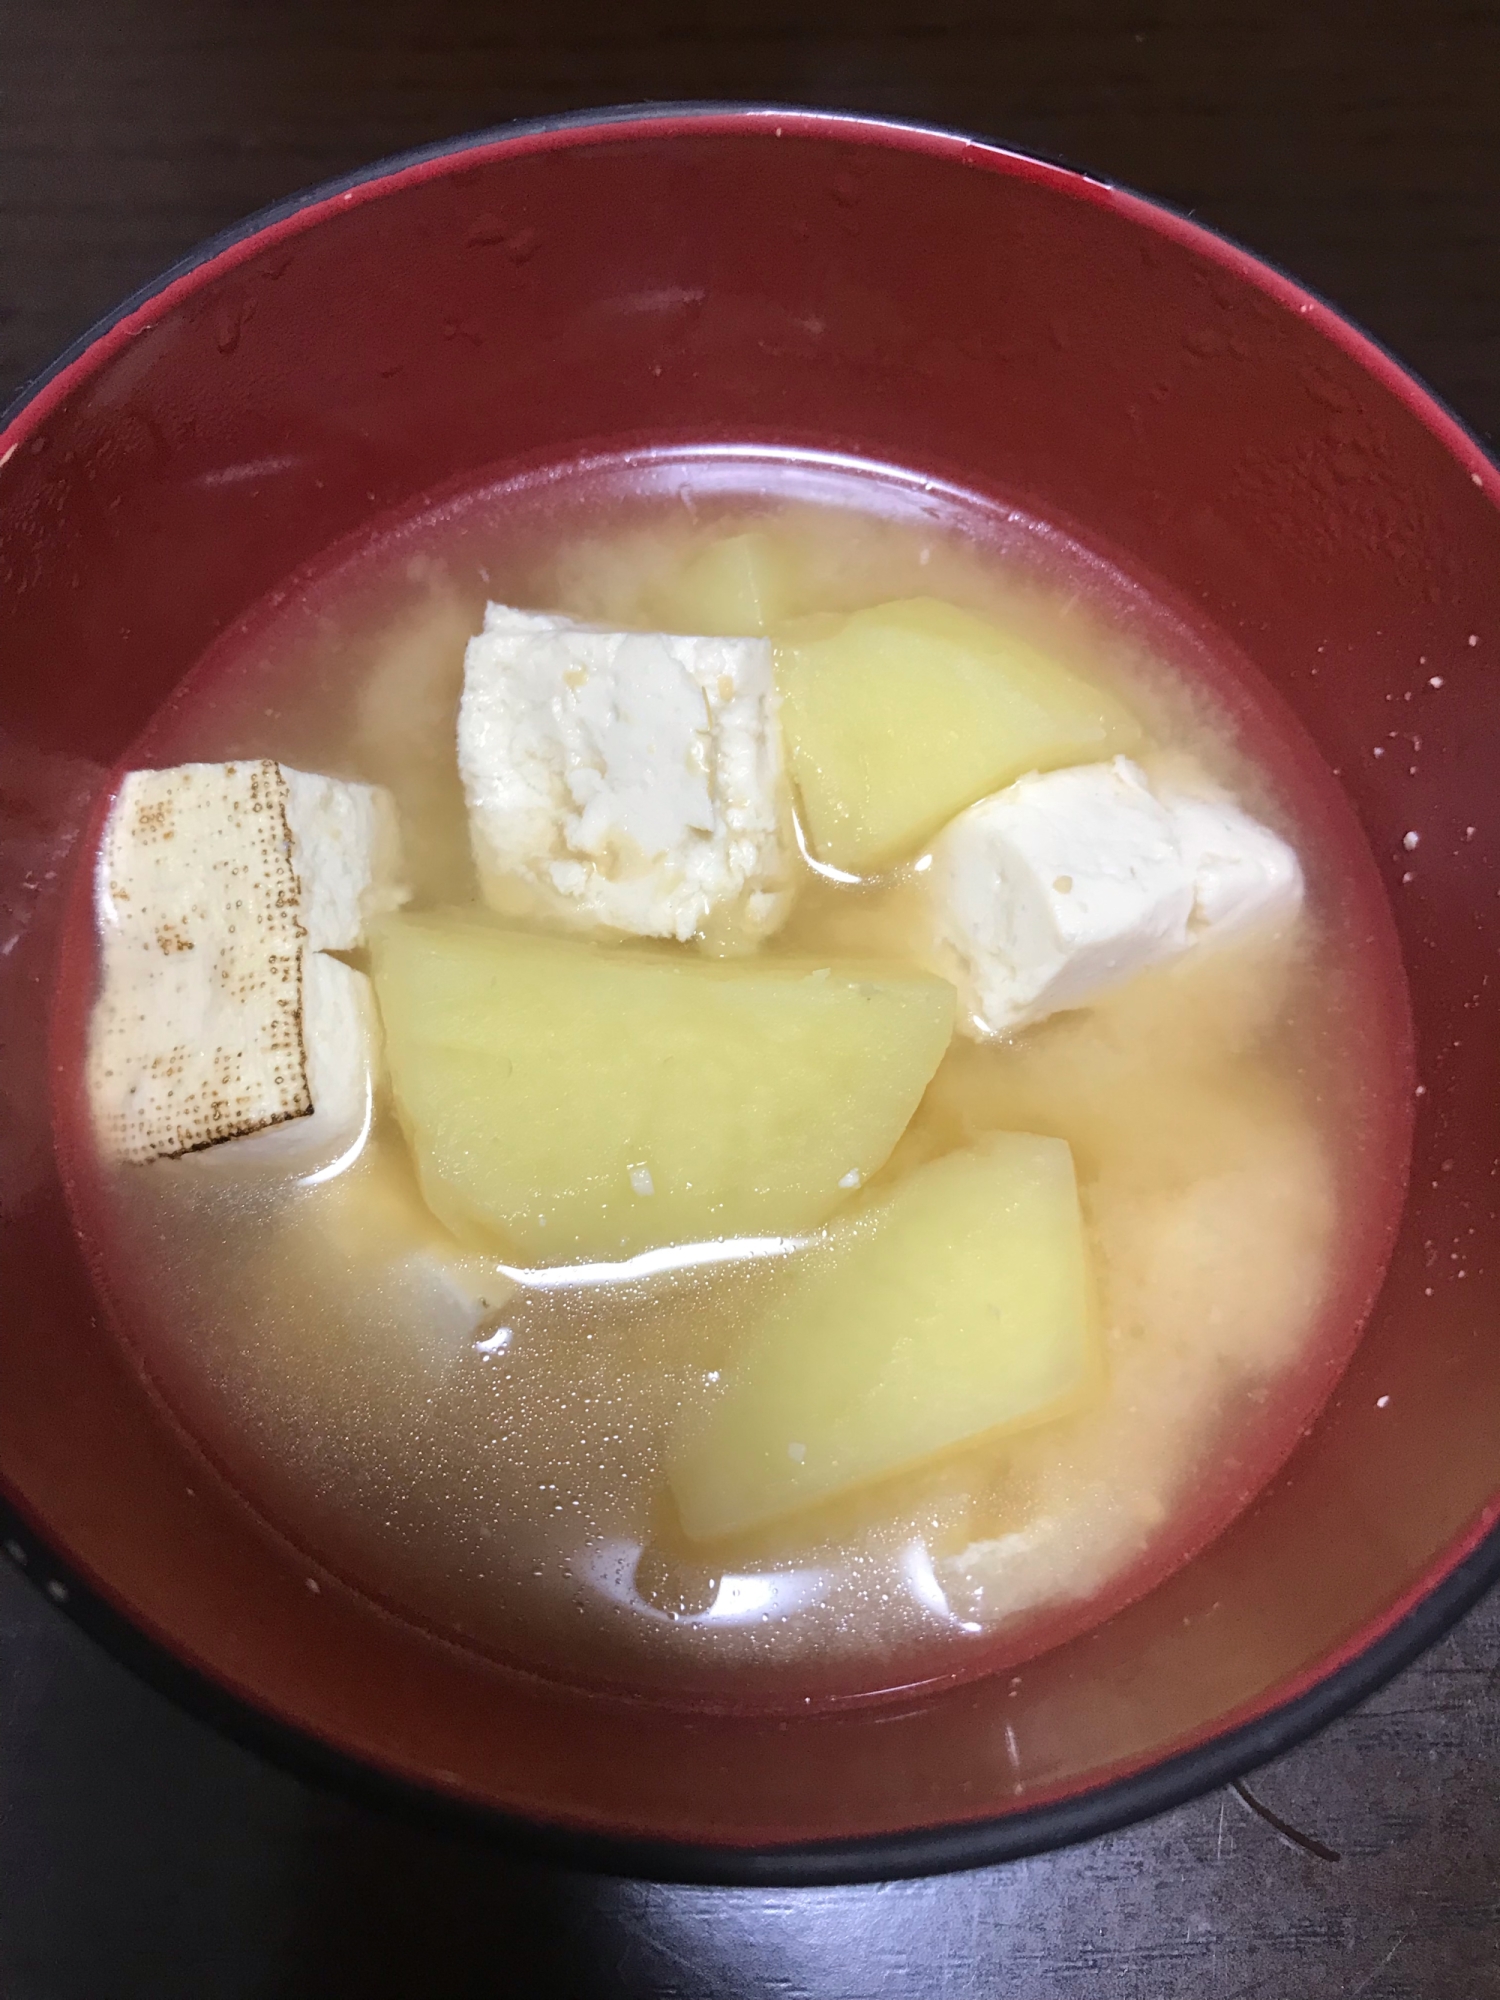 焼き豆腐とじゃがいもの味噌汁